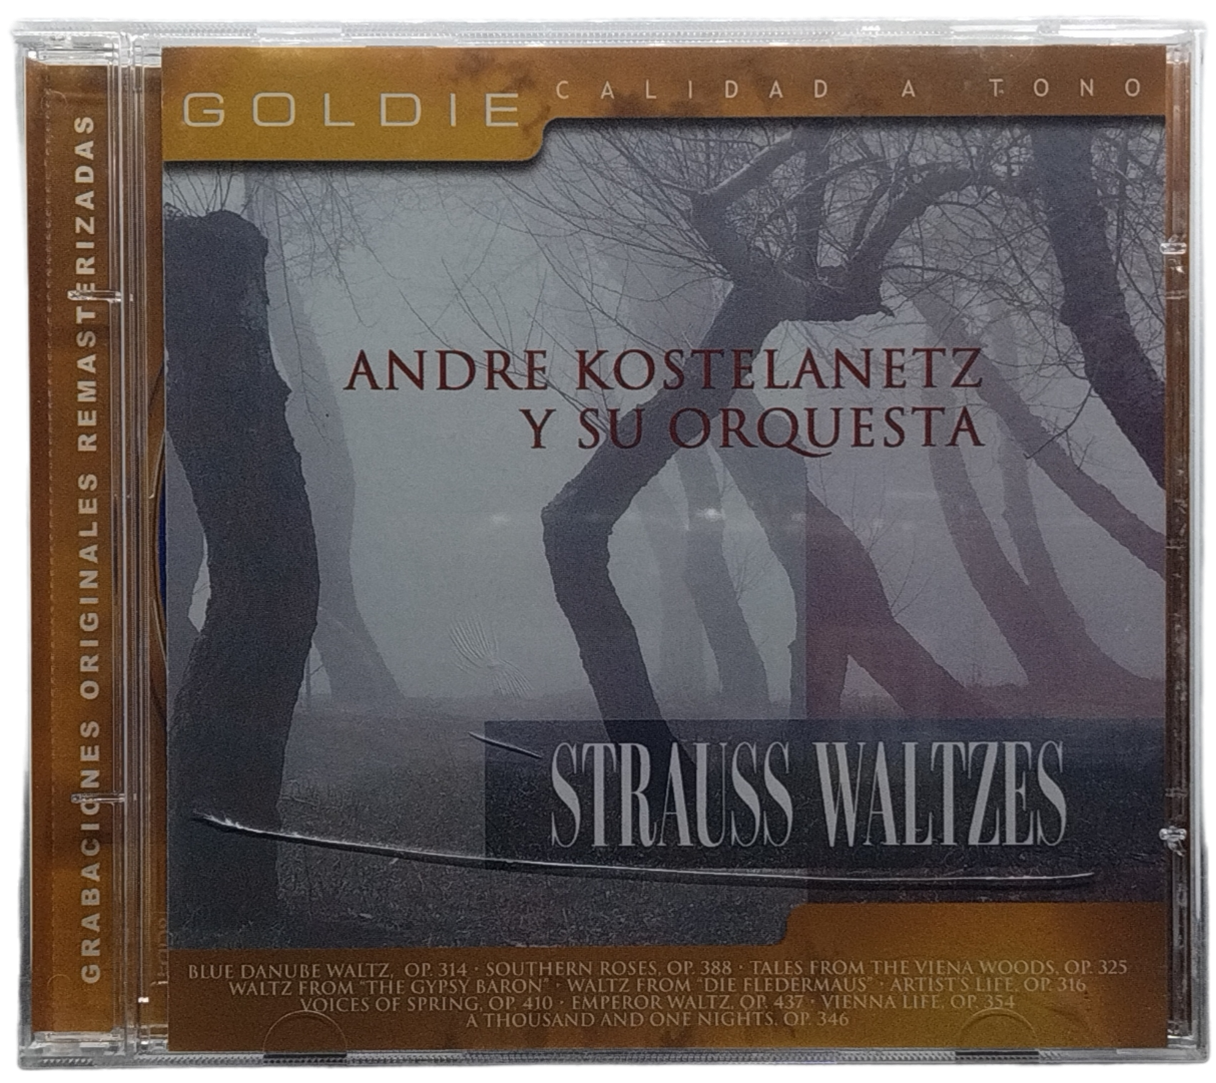 andre kostelanetz y su orquesta  - strauss waltzes